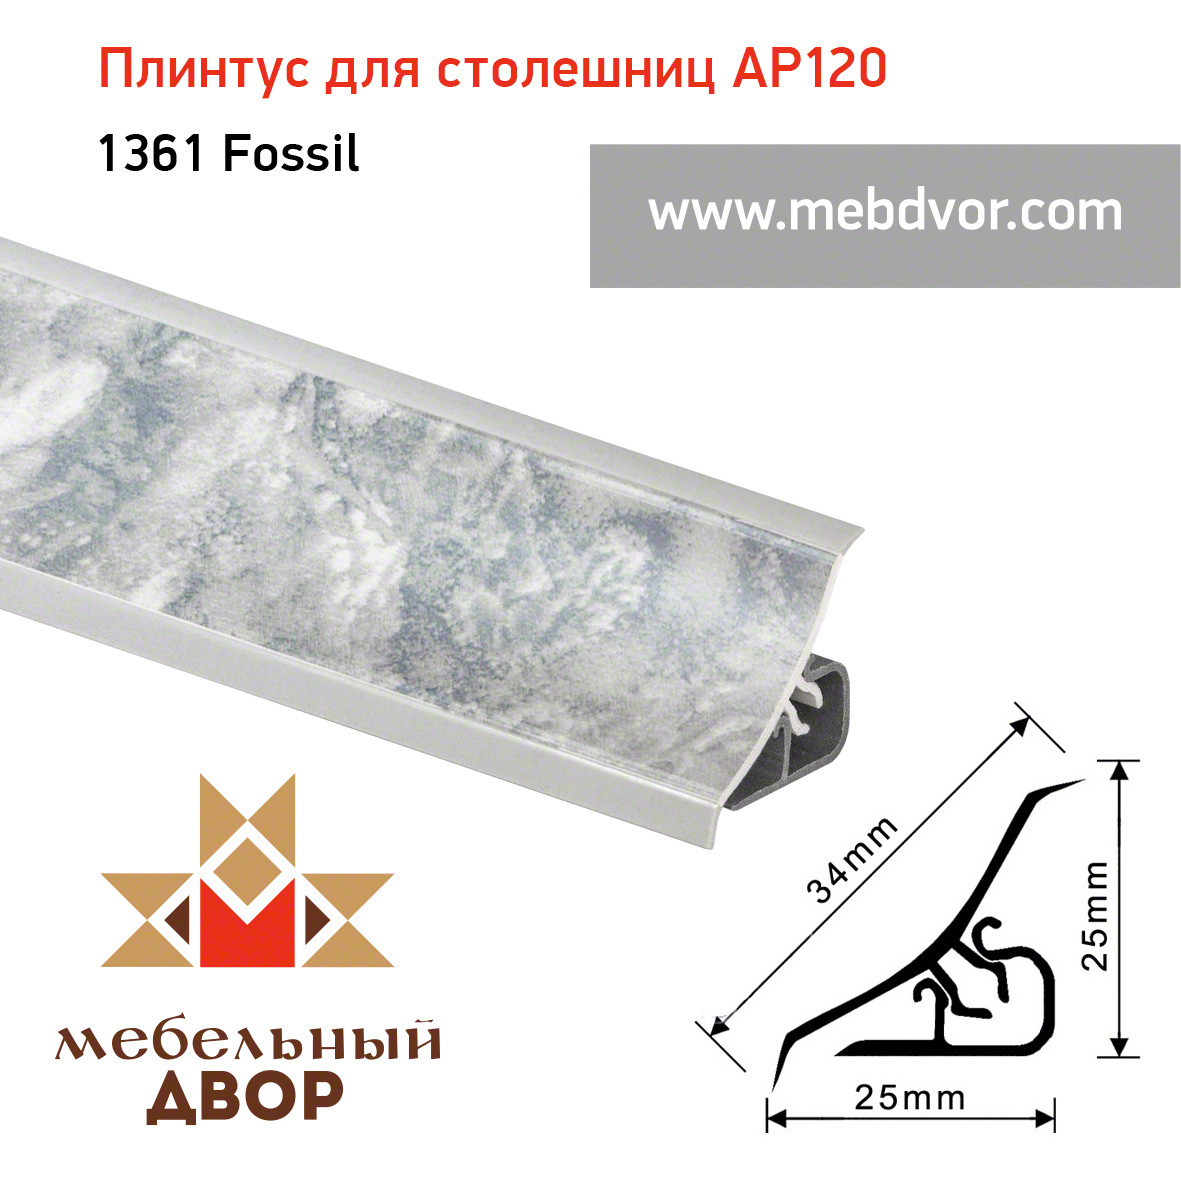 Плинтус для столешниц AP120 (1361_Fossil), 3000 mm